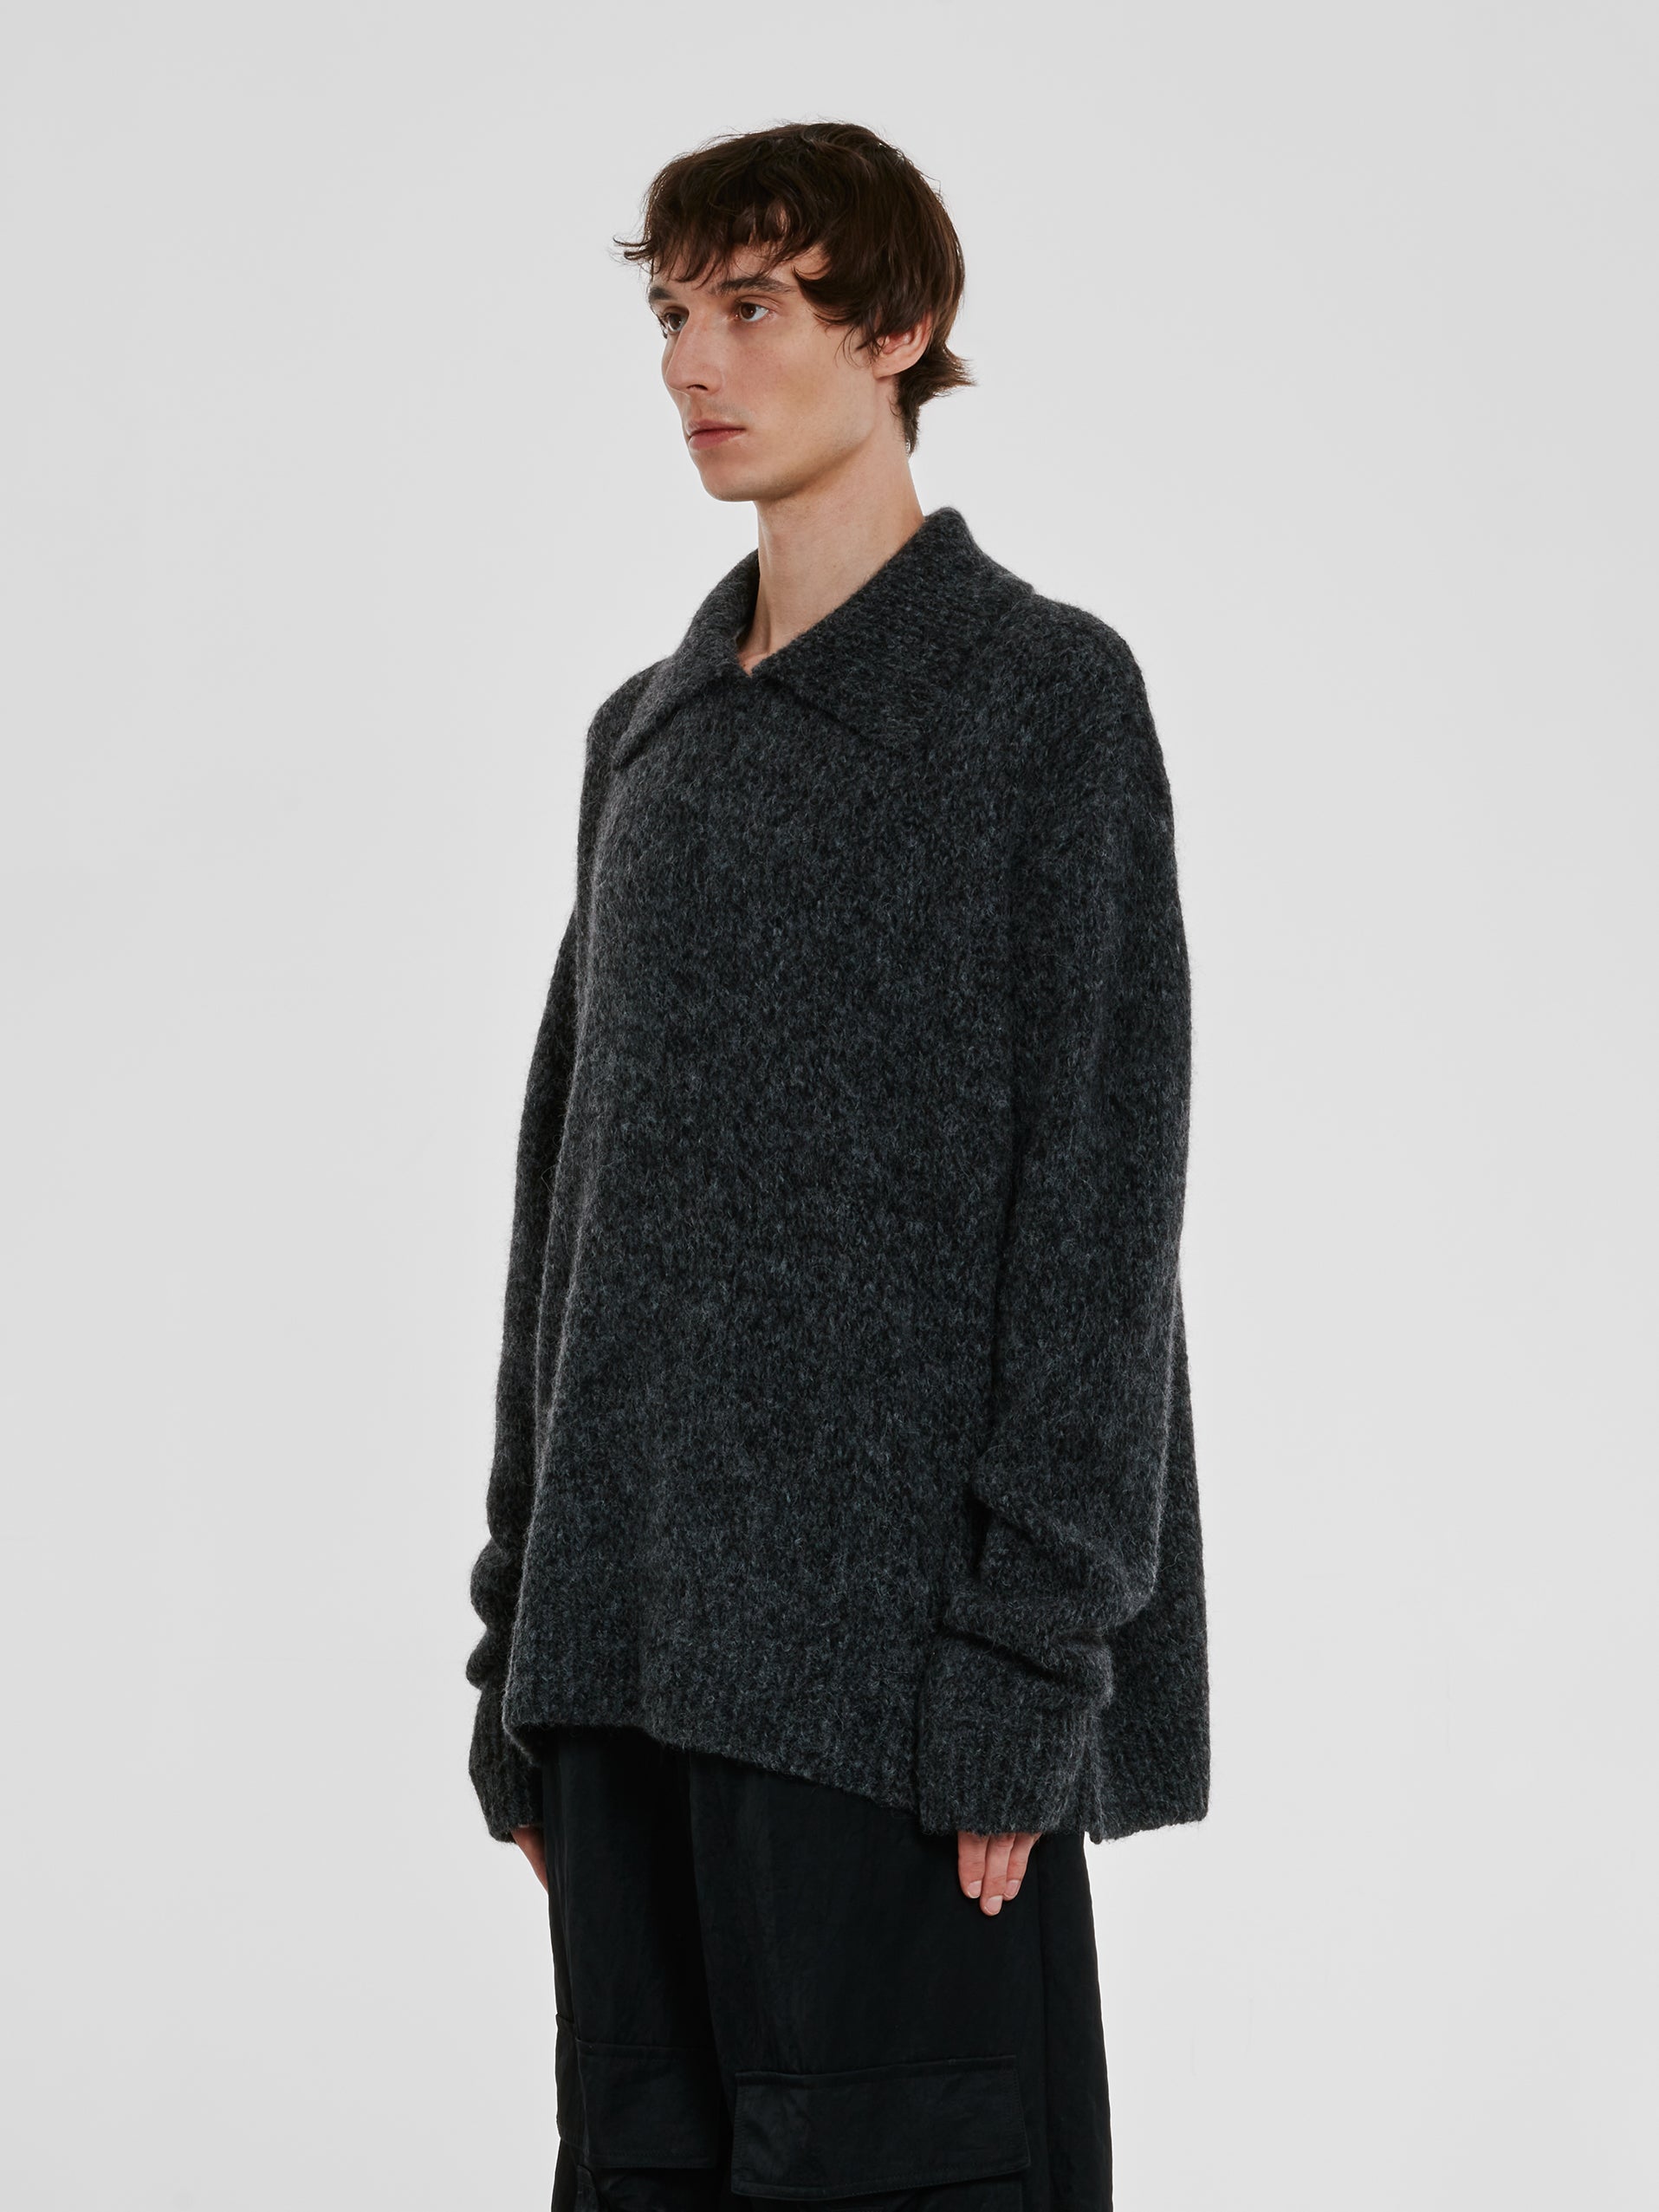 Dries Van Noten - Men’s Collared Sweater - (Grey) view 2